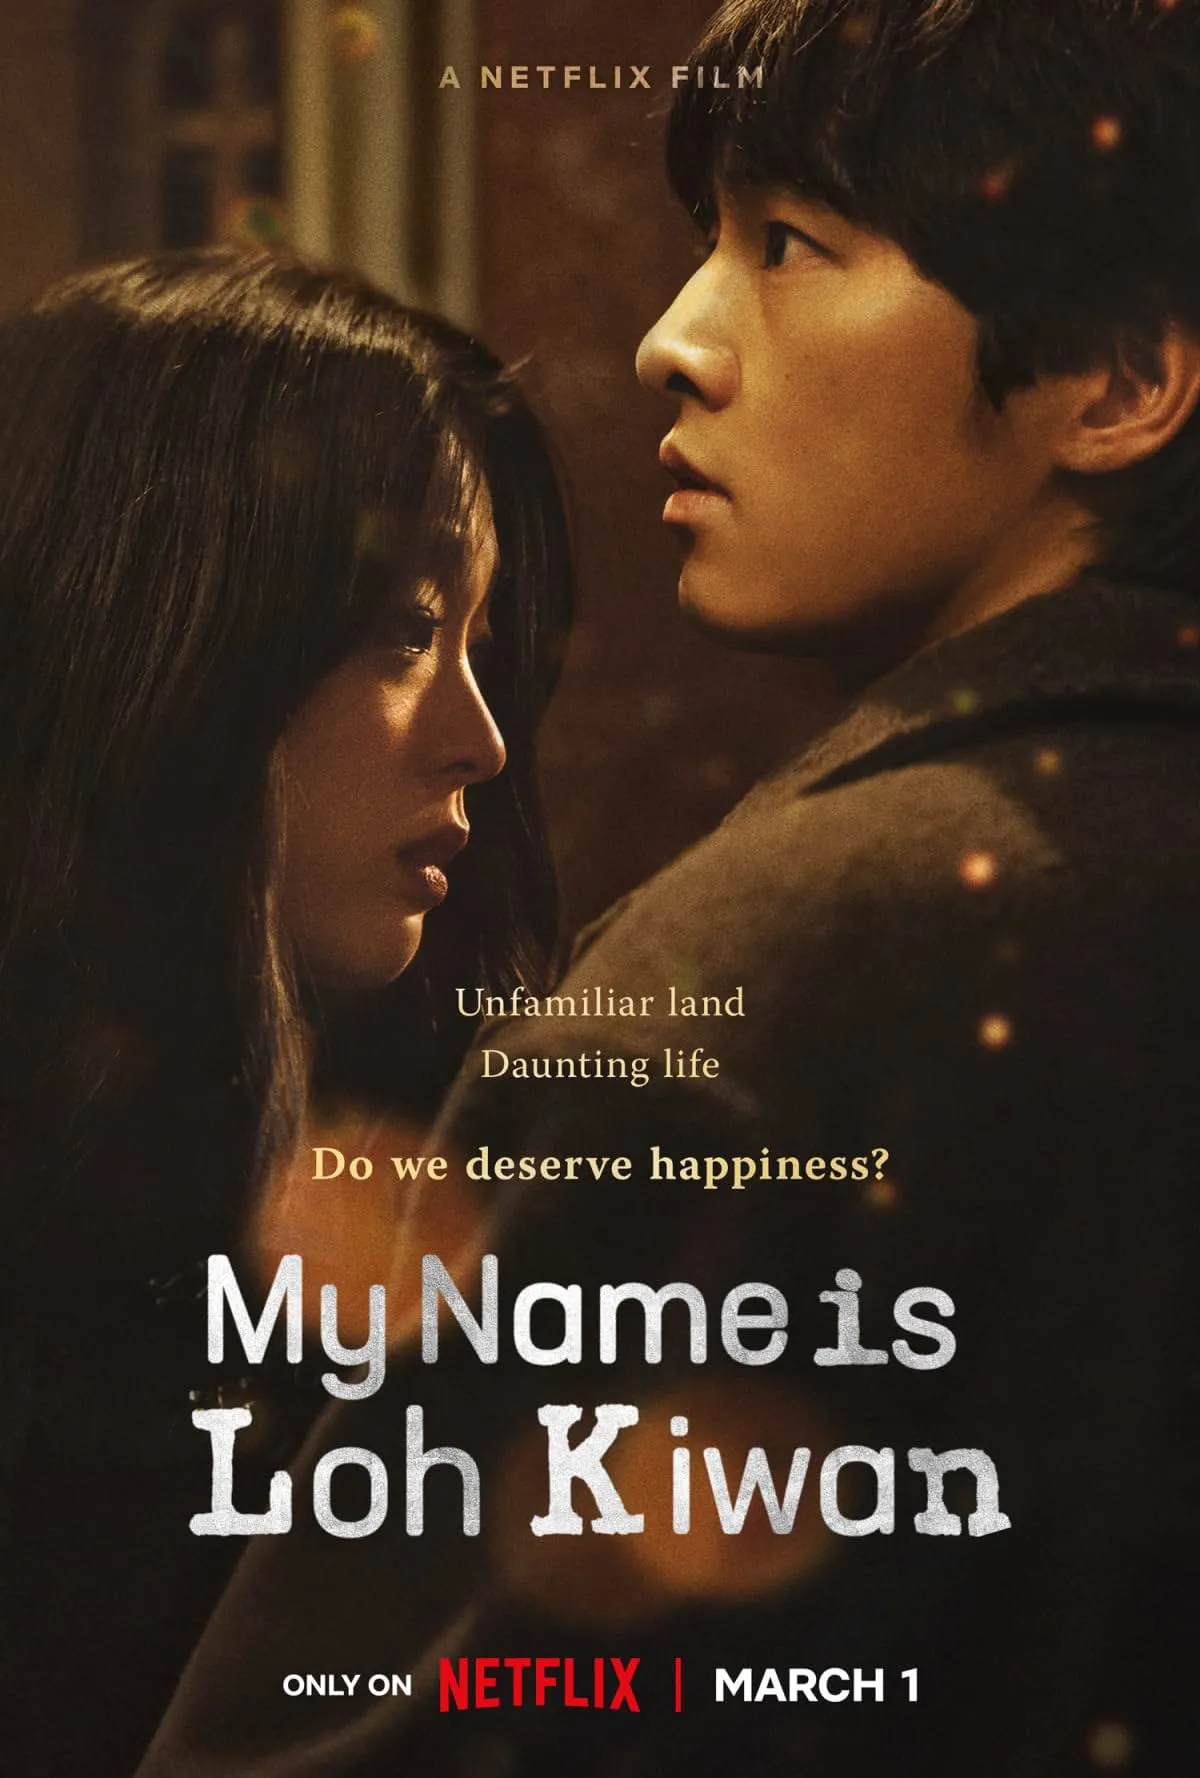     Nazywam się Loh Kiwan